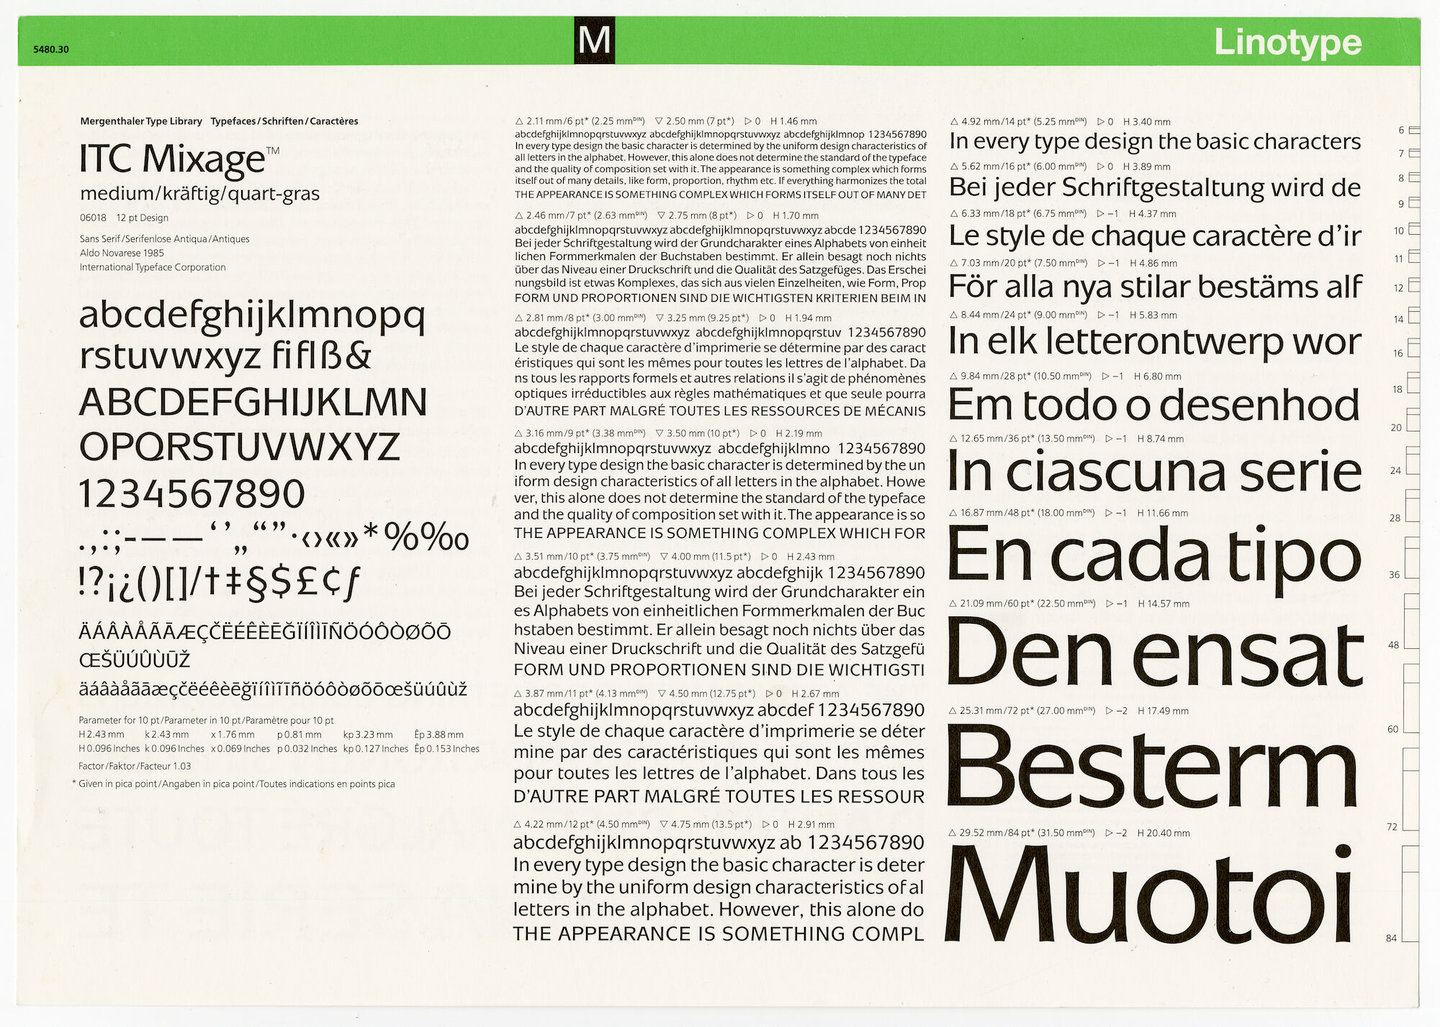 Letterproef met het lettertype ITC Mixage voor Linotype